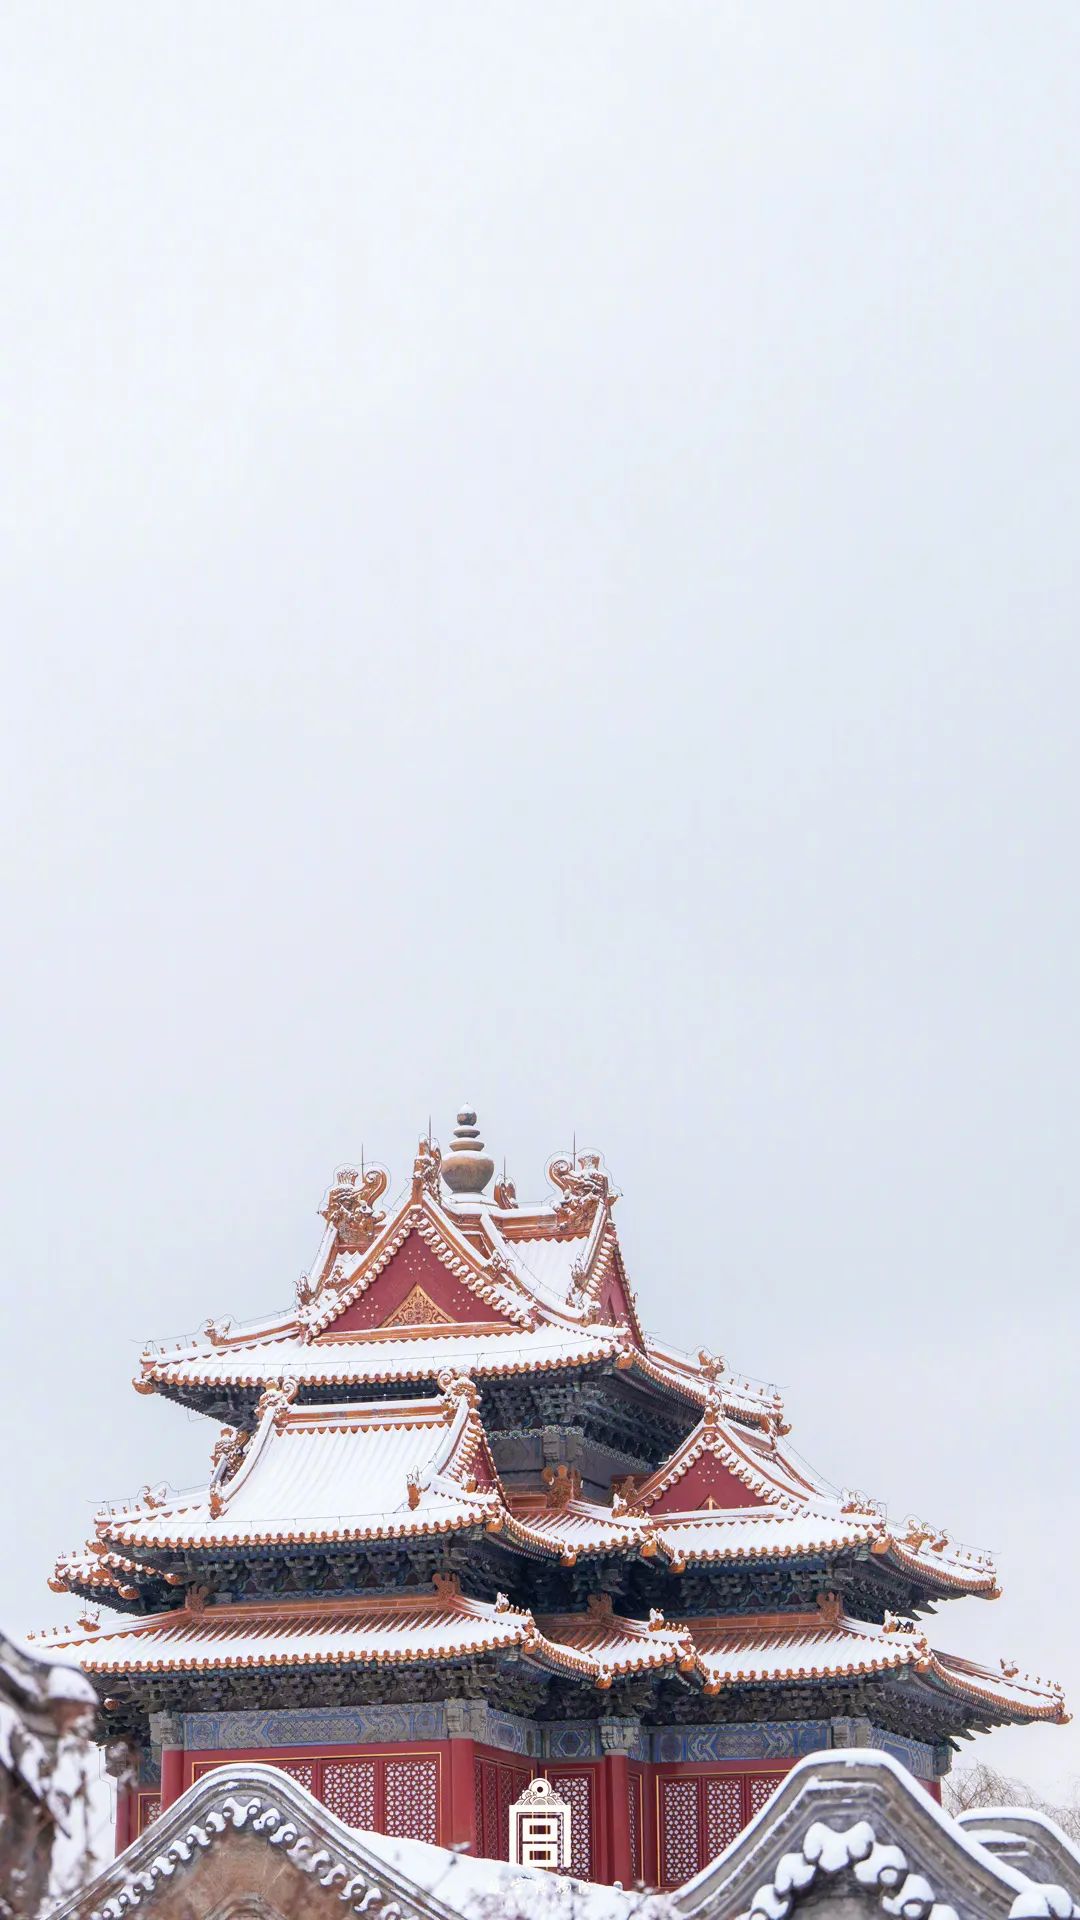 北京故宫雪景图片2020图片